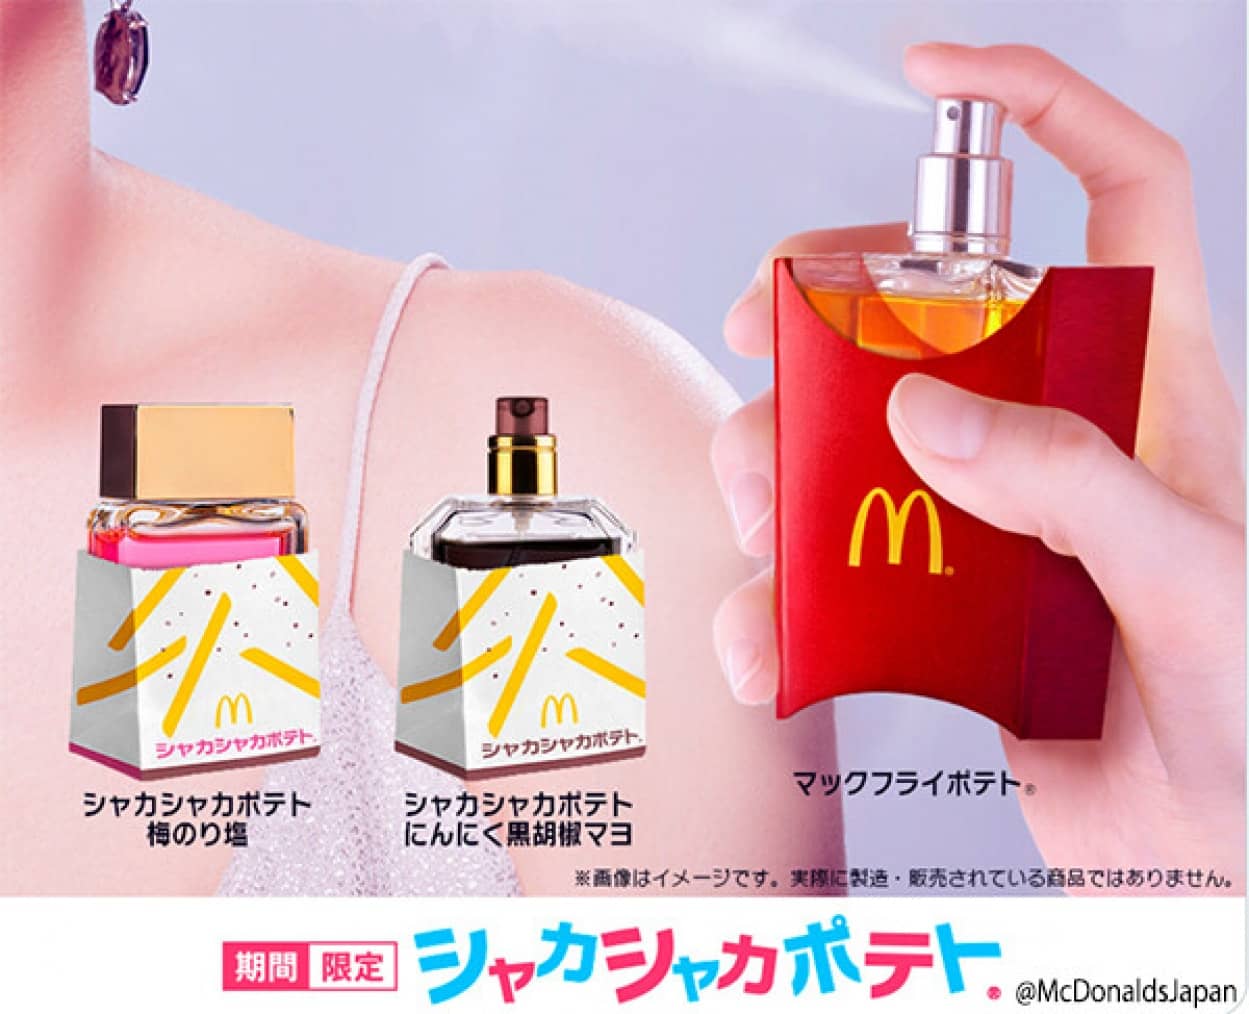 日本マクドナルドがポテトの香りがする香水をSNSに投稿、海外に拡散され期待されてしまう